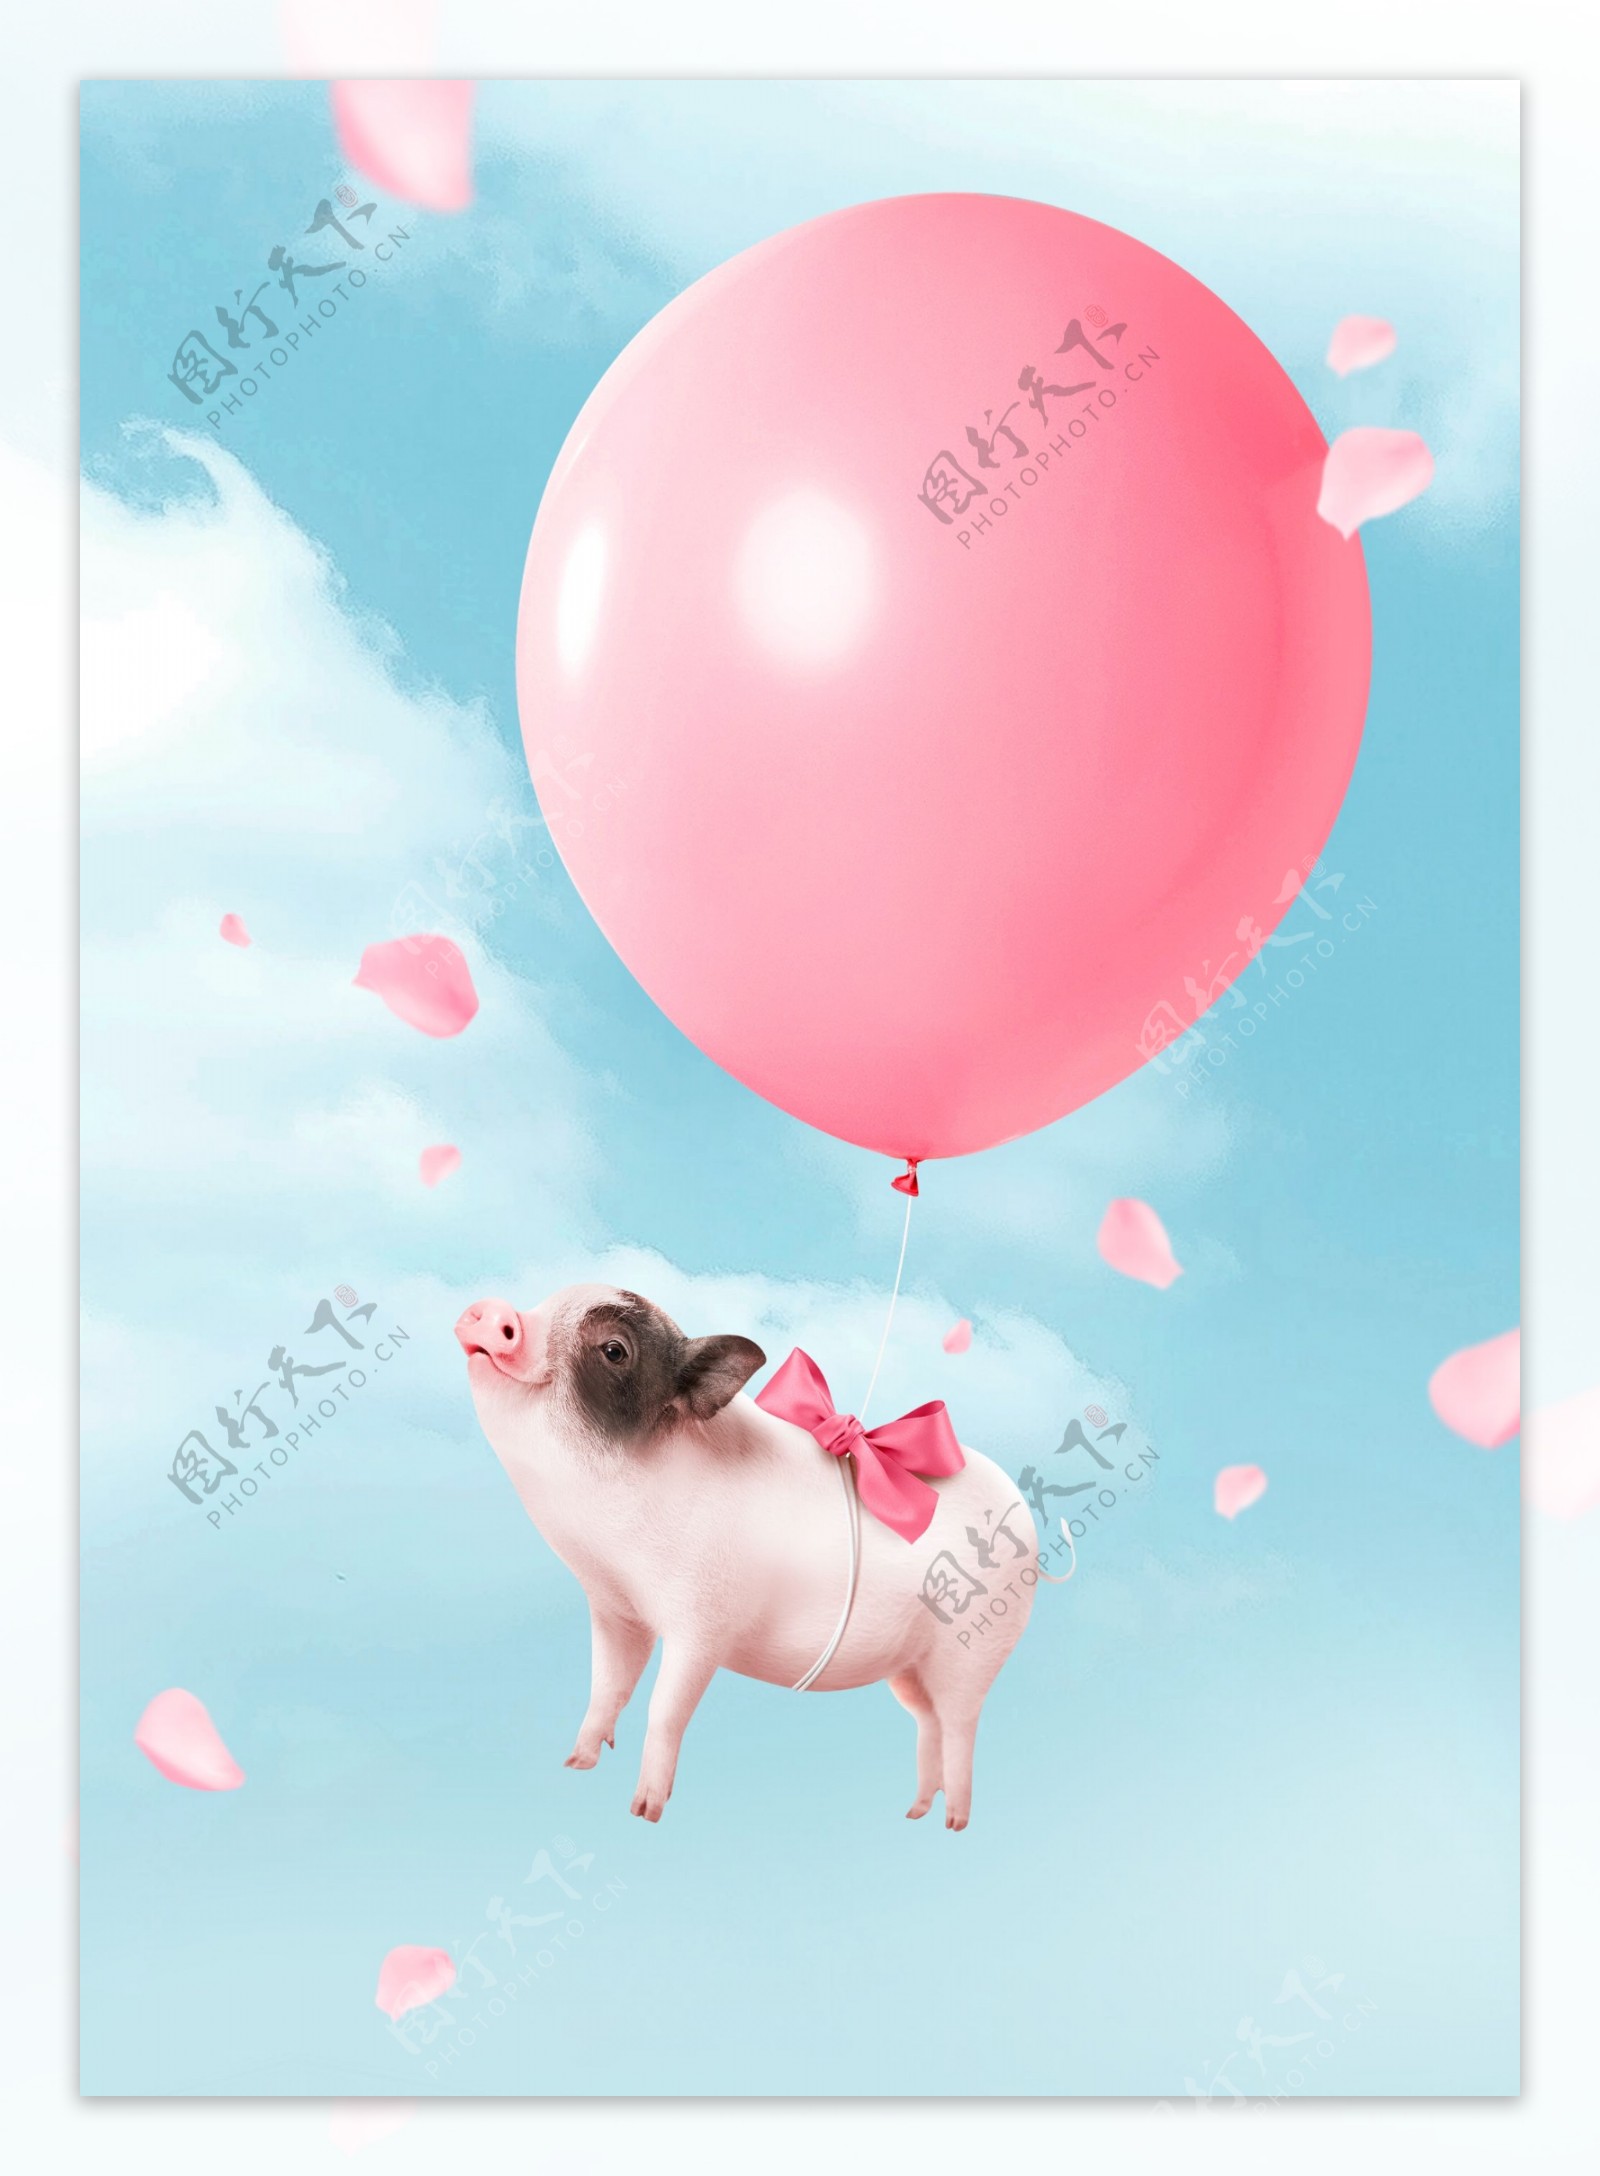 简约粉色气球2019猪年形象背景素材